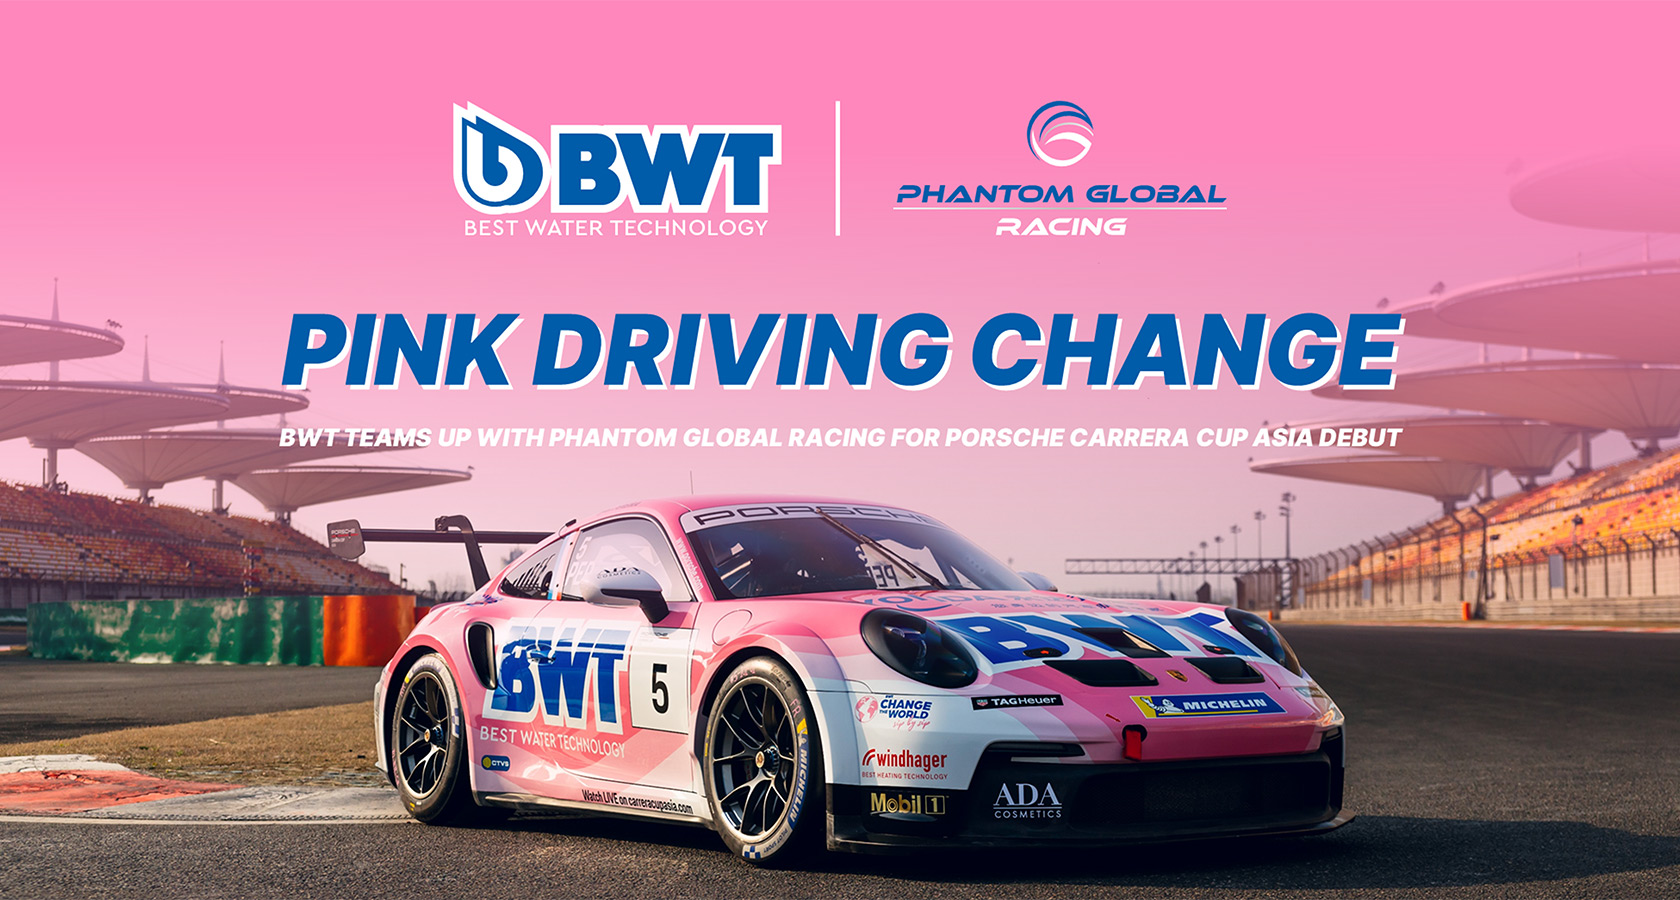 Pink BWT racing car